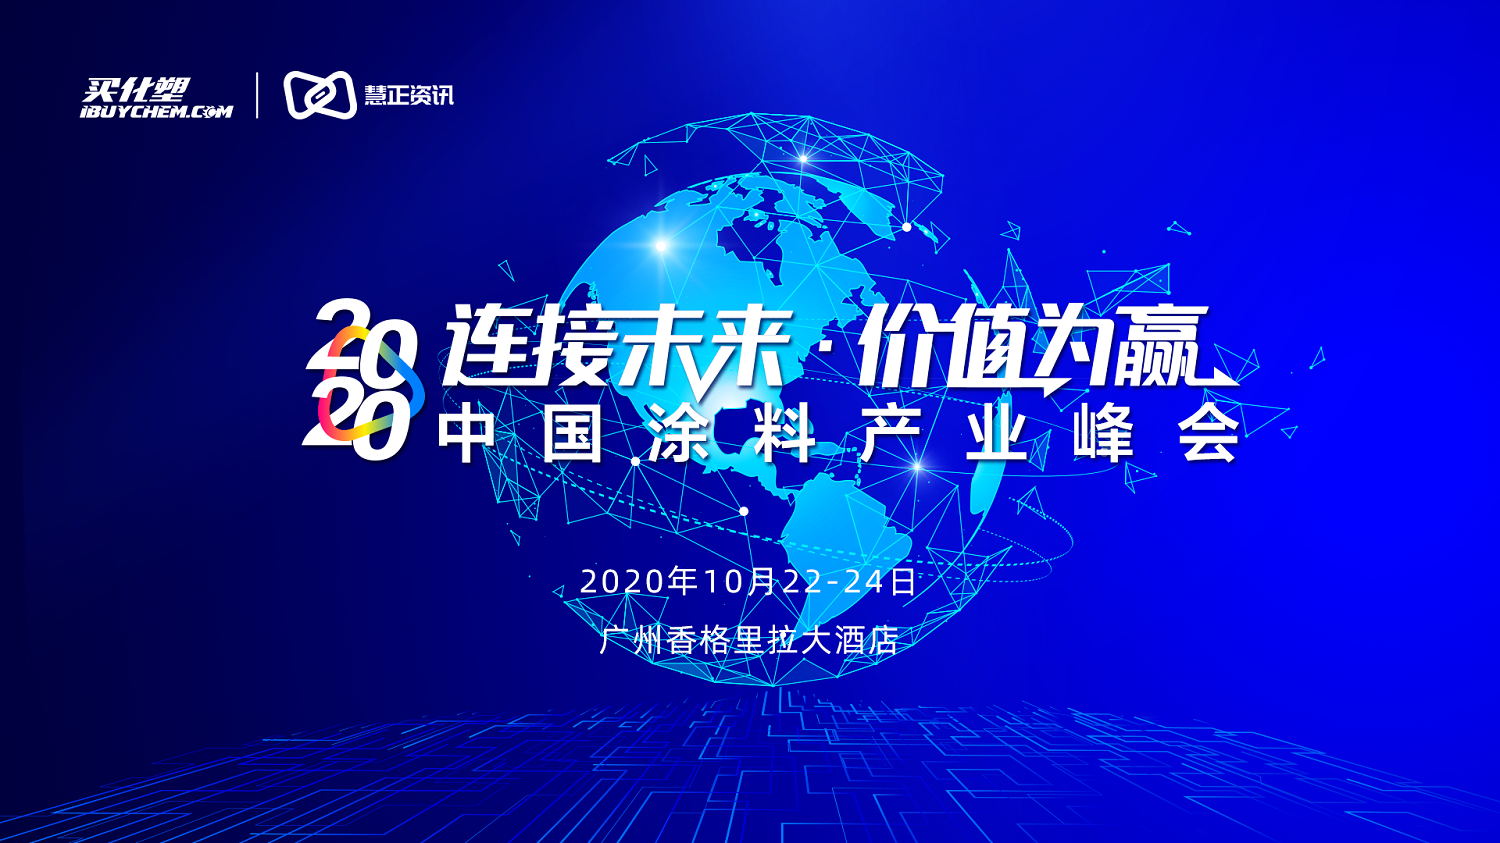 政和工程冠名的2020中国涂料产业峰会智慧工厂分论坛之《建设项目工程总承包(EPC)全新模式》圆满成功